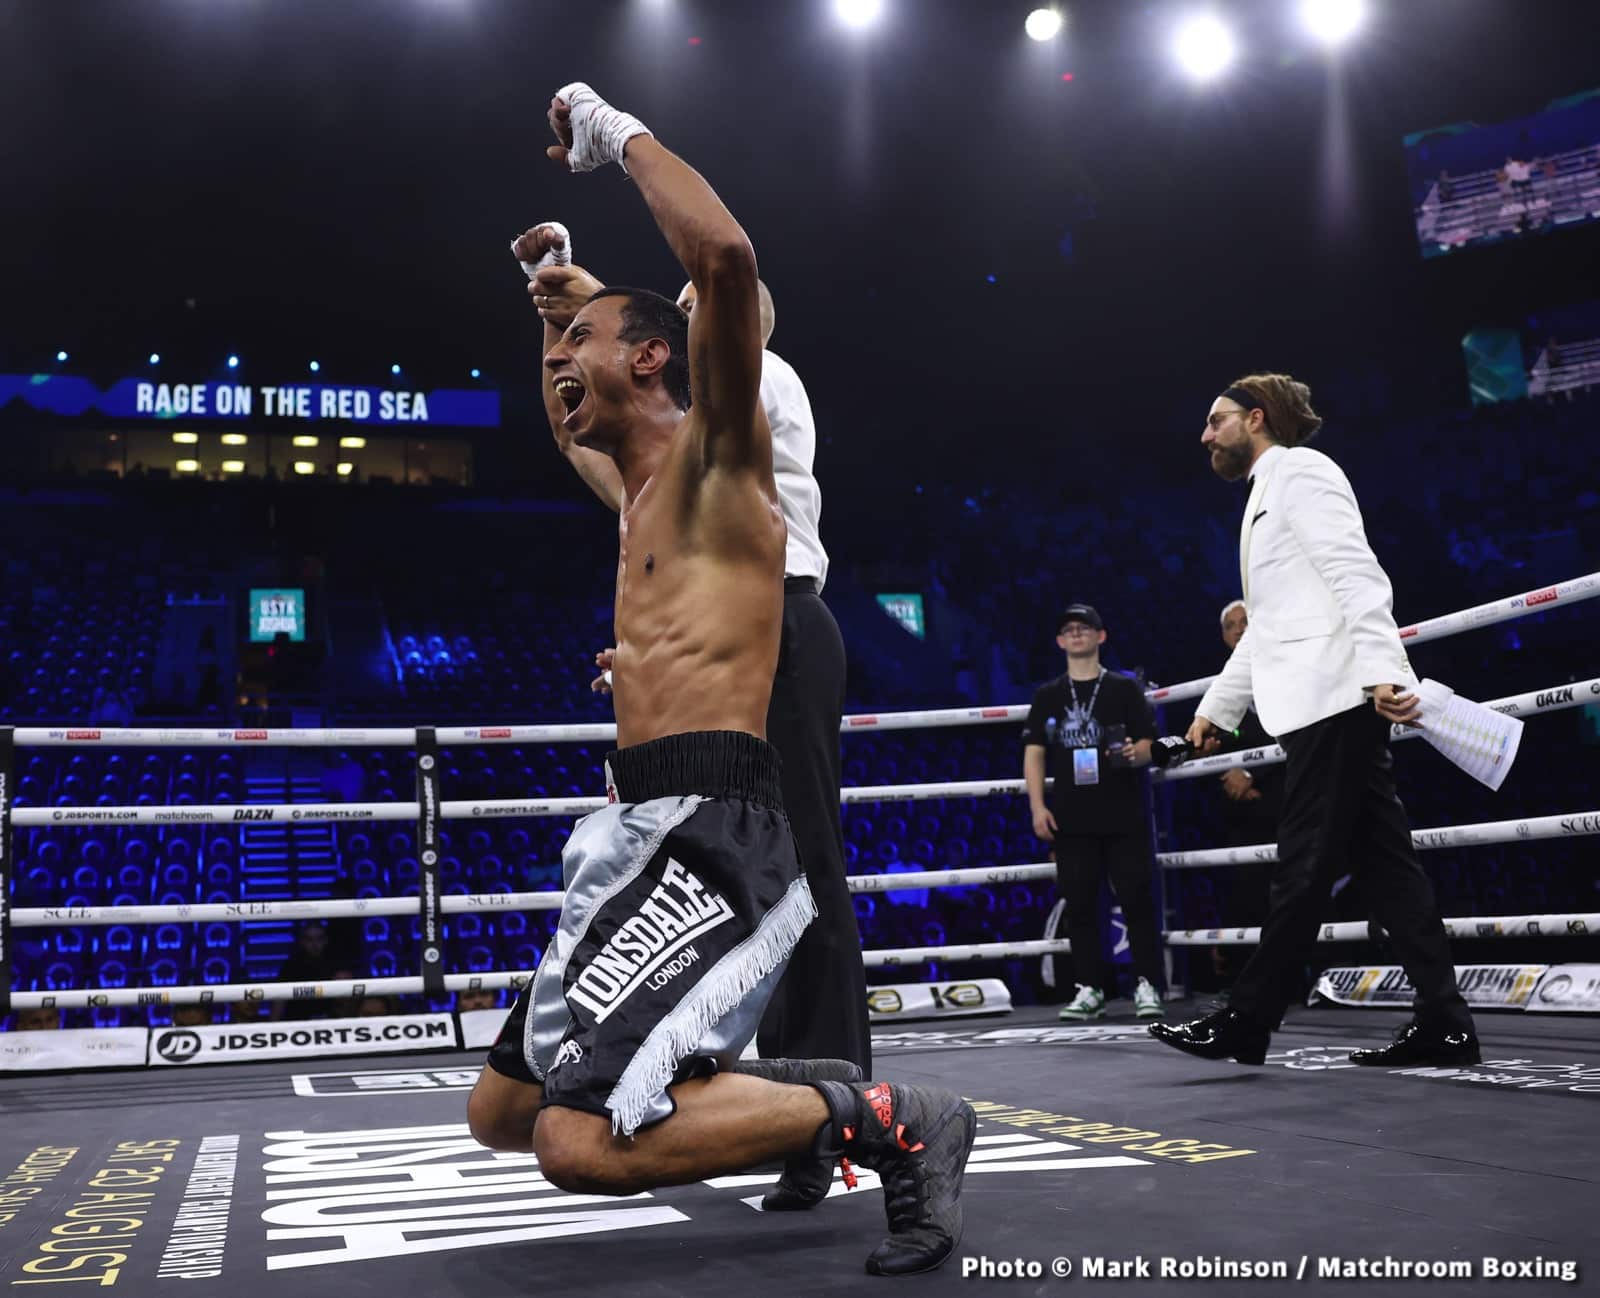 Rashid Belhasa boxing image / photo